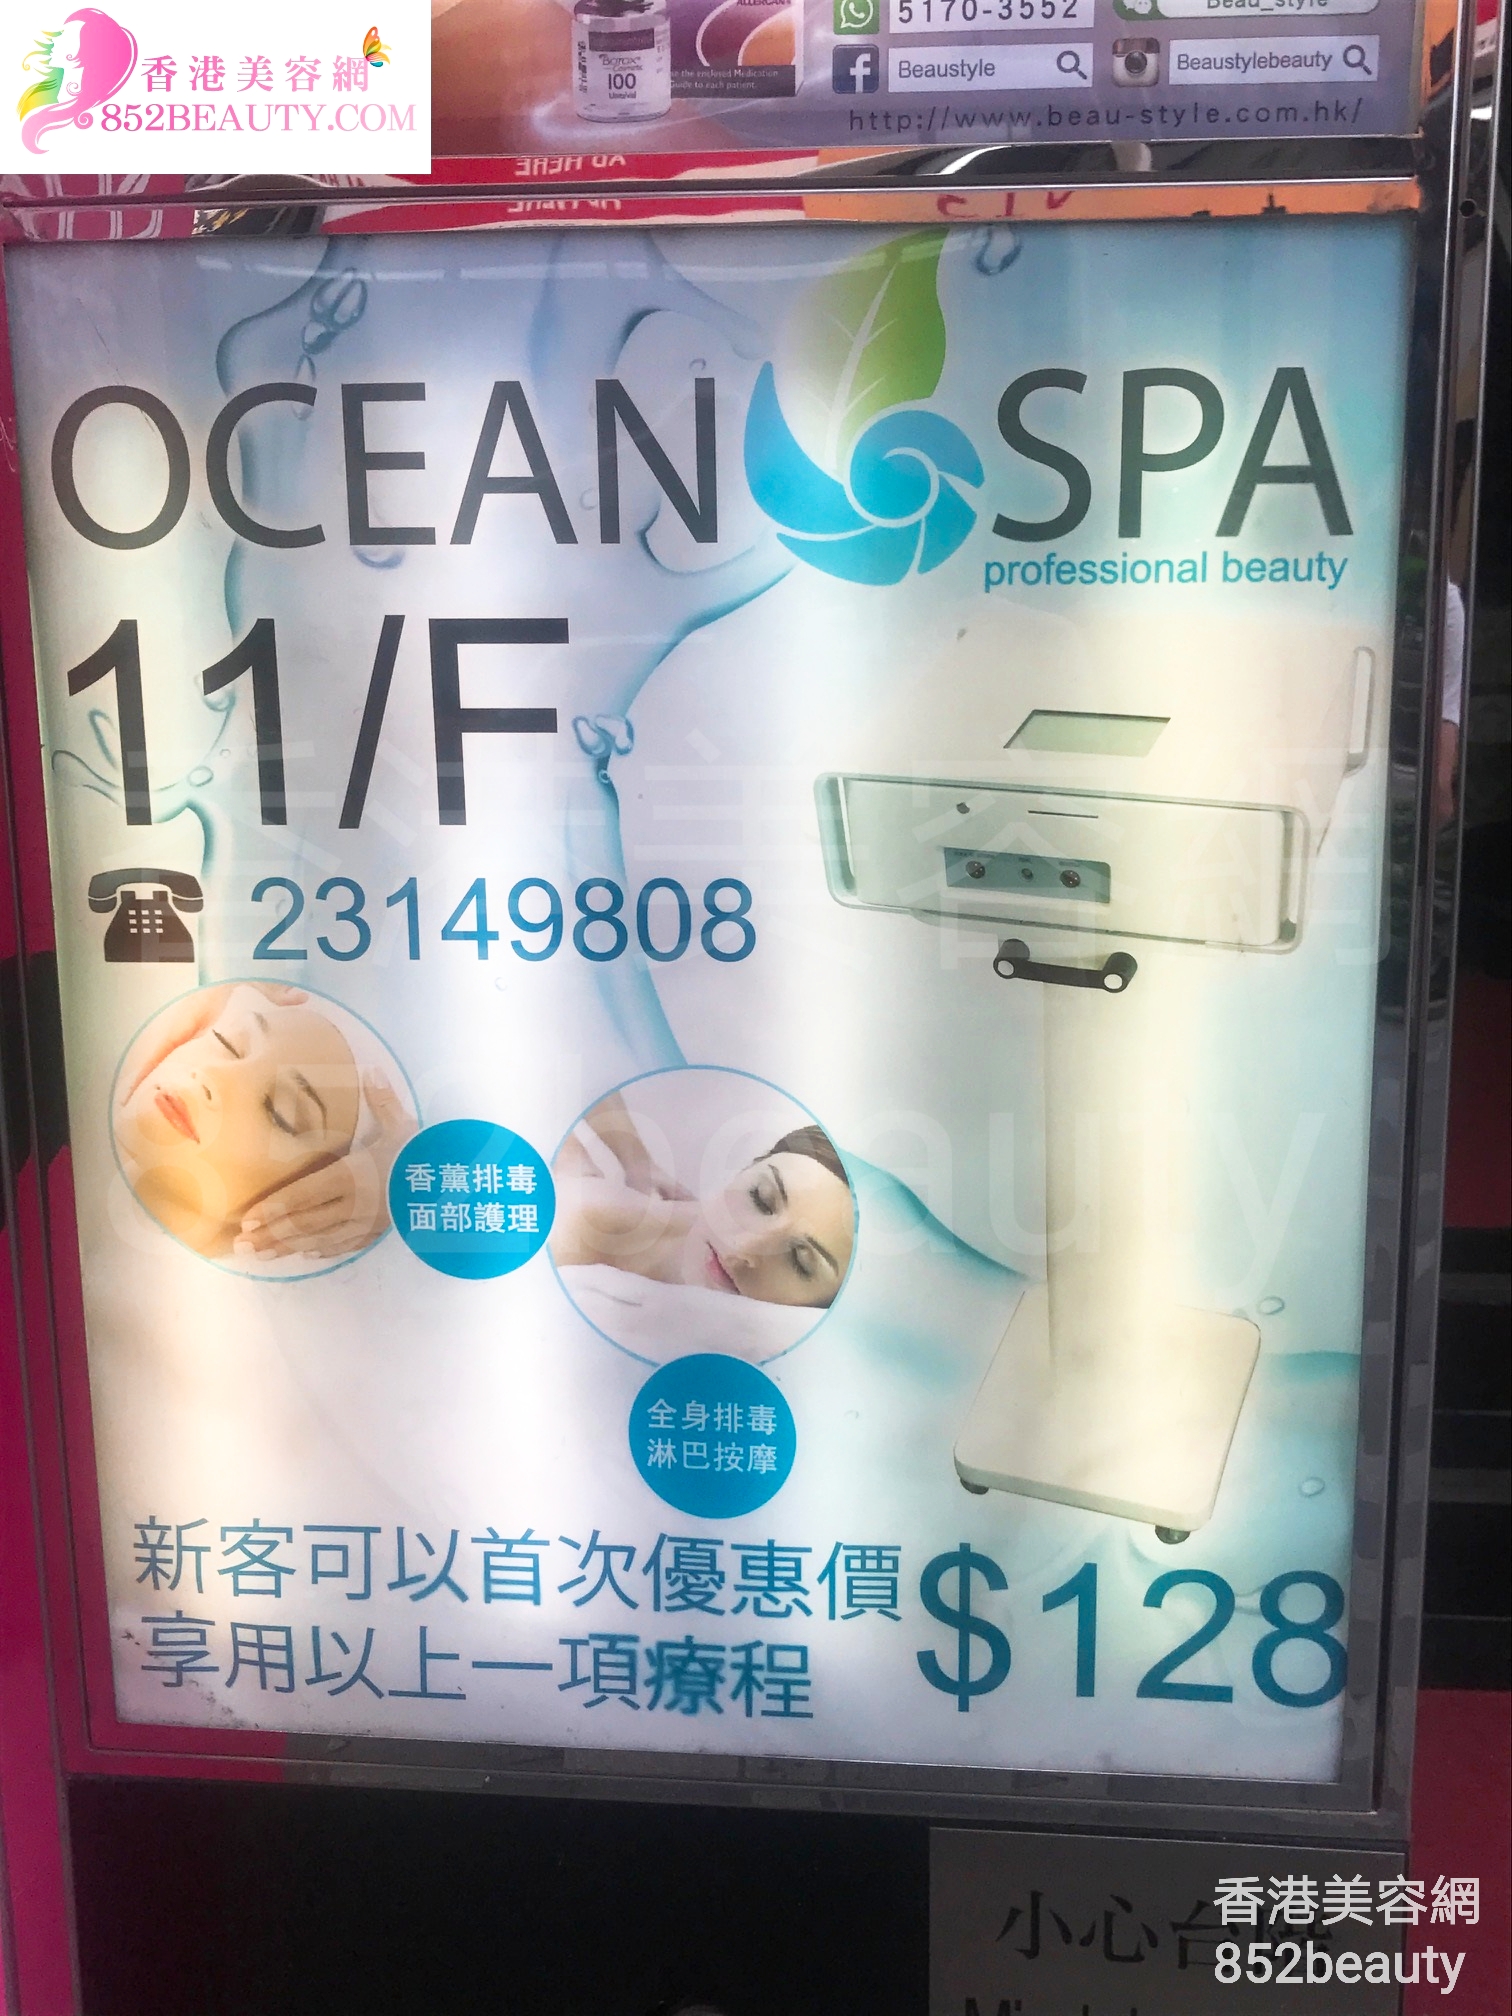 香港美容網 Hong Kong Beauty Salon 美容院 / 美容師: Ocean Spa - Jordan